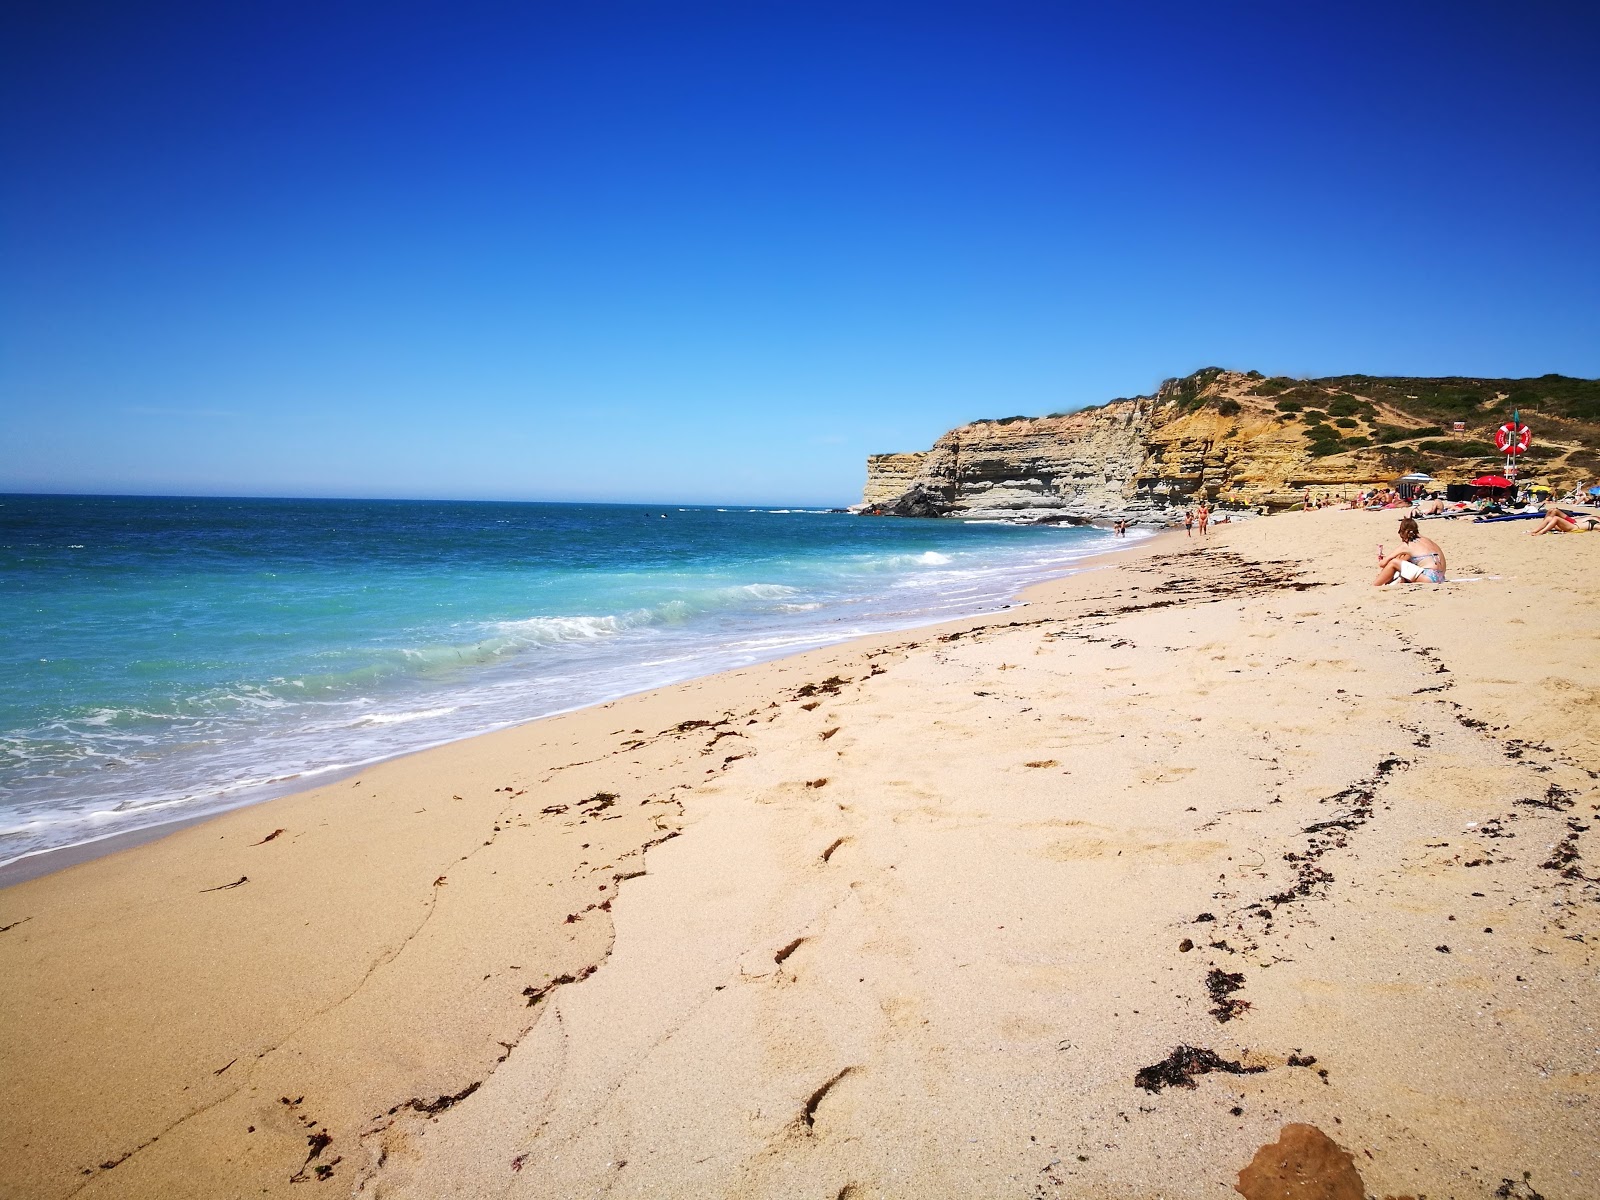 Praia do Alibaba'in fotoğrafı - rahatlamayı sevenler arasında popüler bir yer